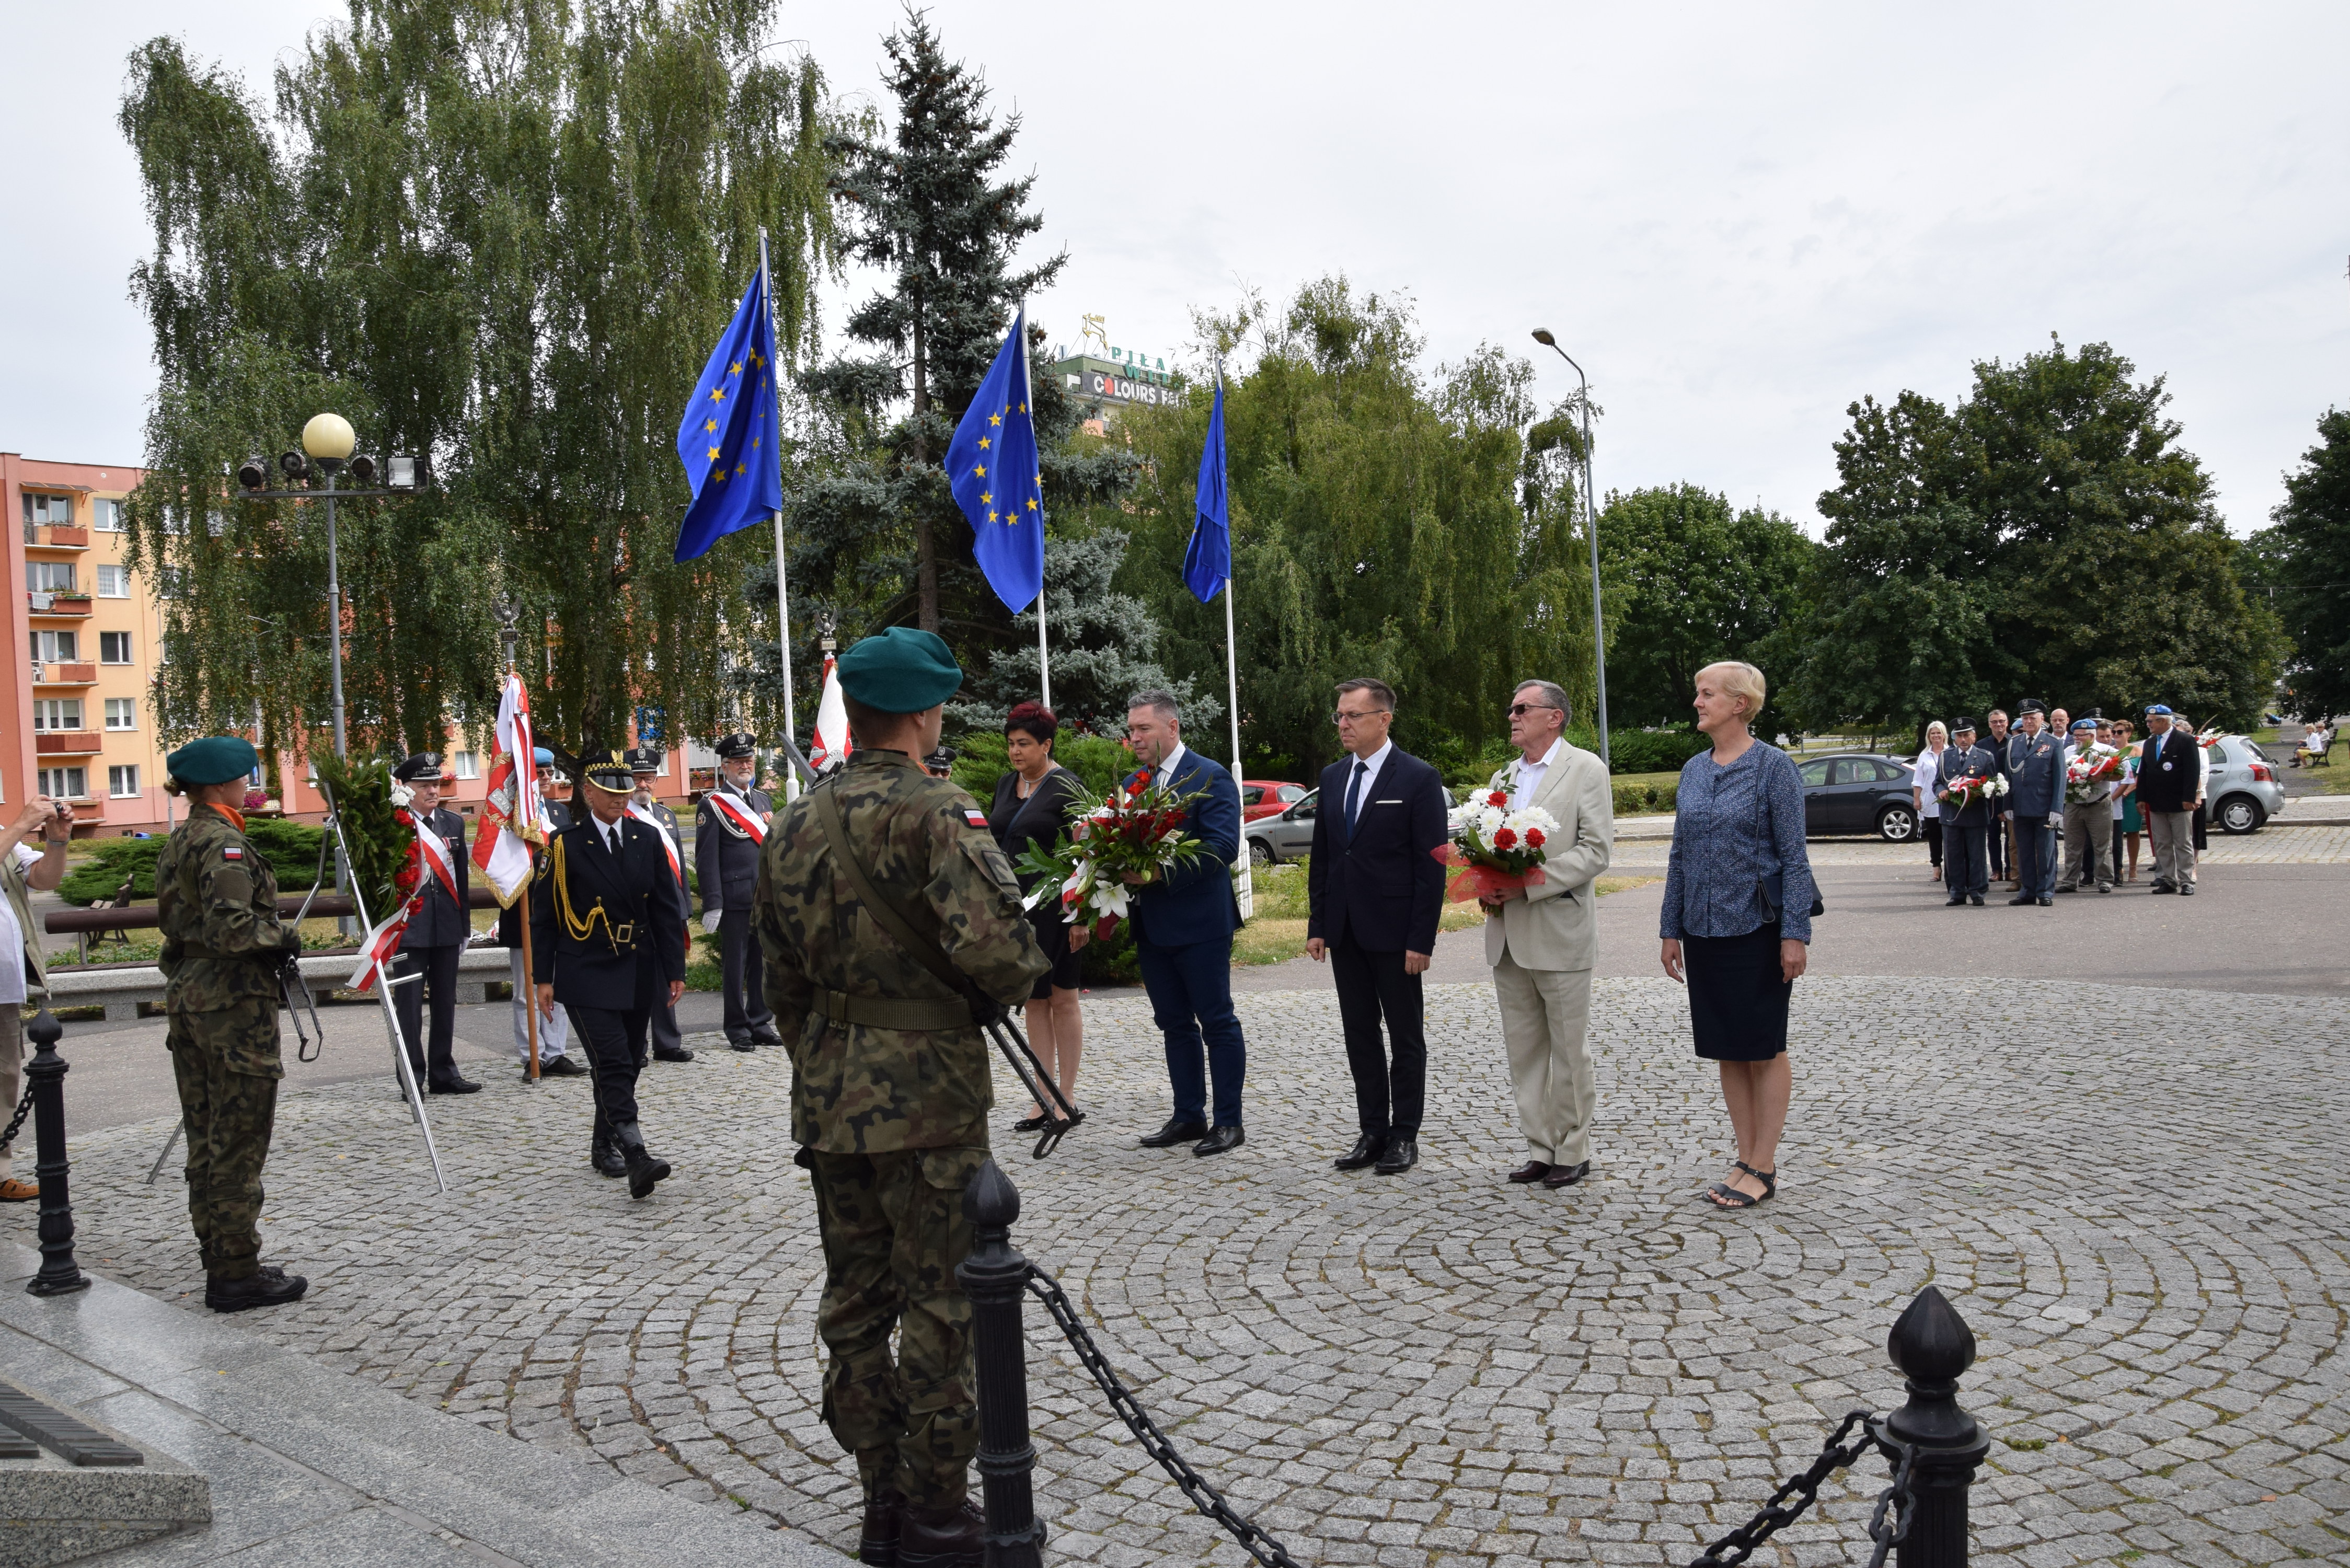 delegacja stoi przed pomnikiem, 2 żołnierzy po obu stronach pomnika pełni wartę honorową. 